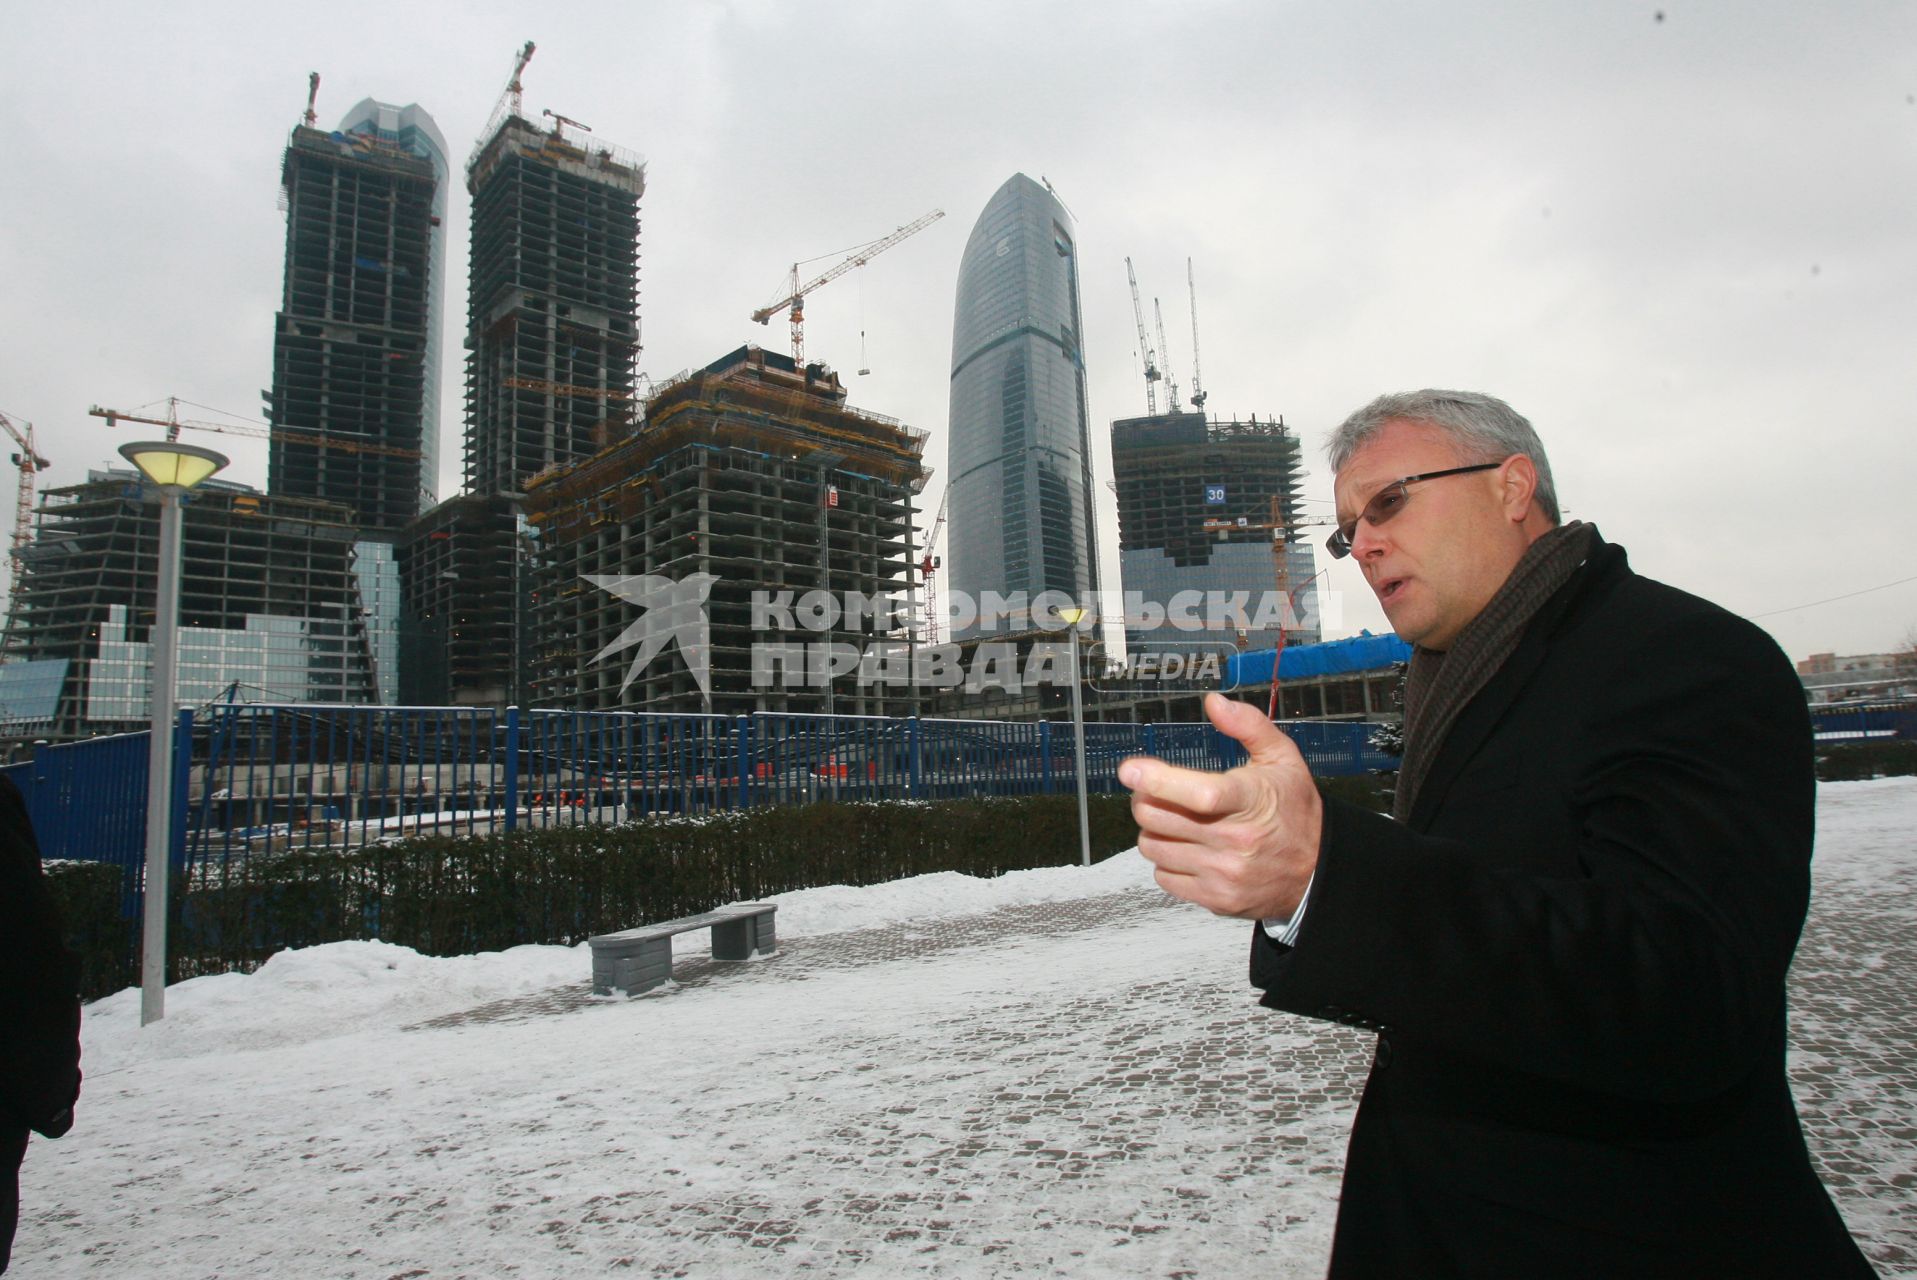 Российский предприниматель, бизнесмен Александр Лебедев напротив строящегося СИТИ. 13 декабря 2007 года.